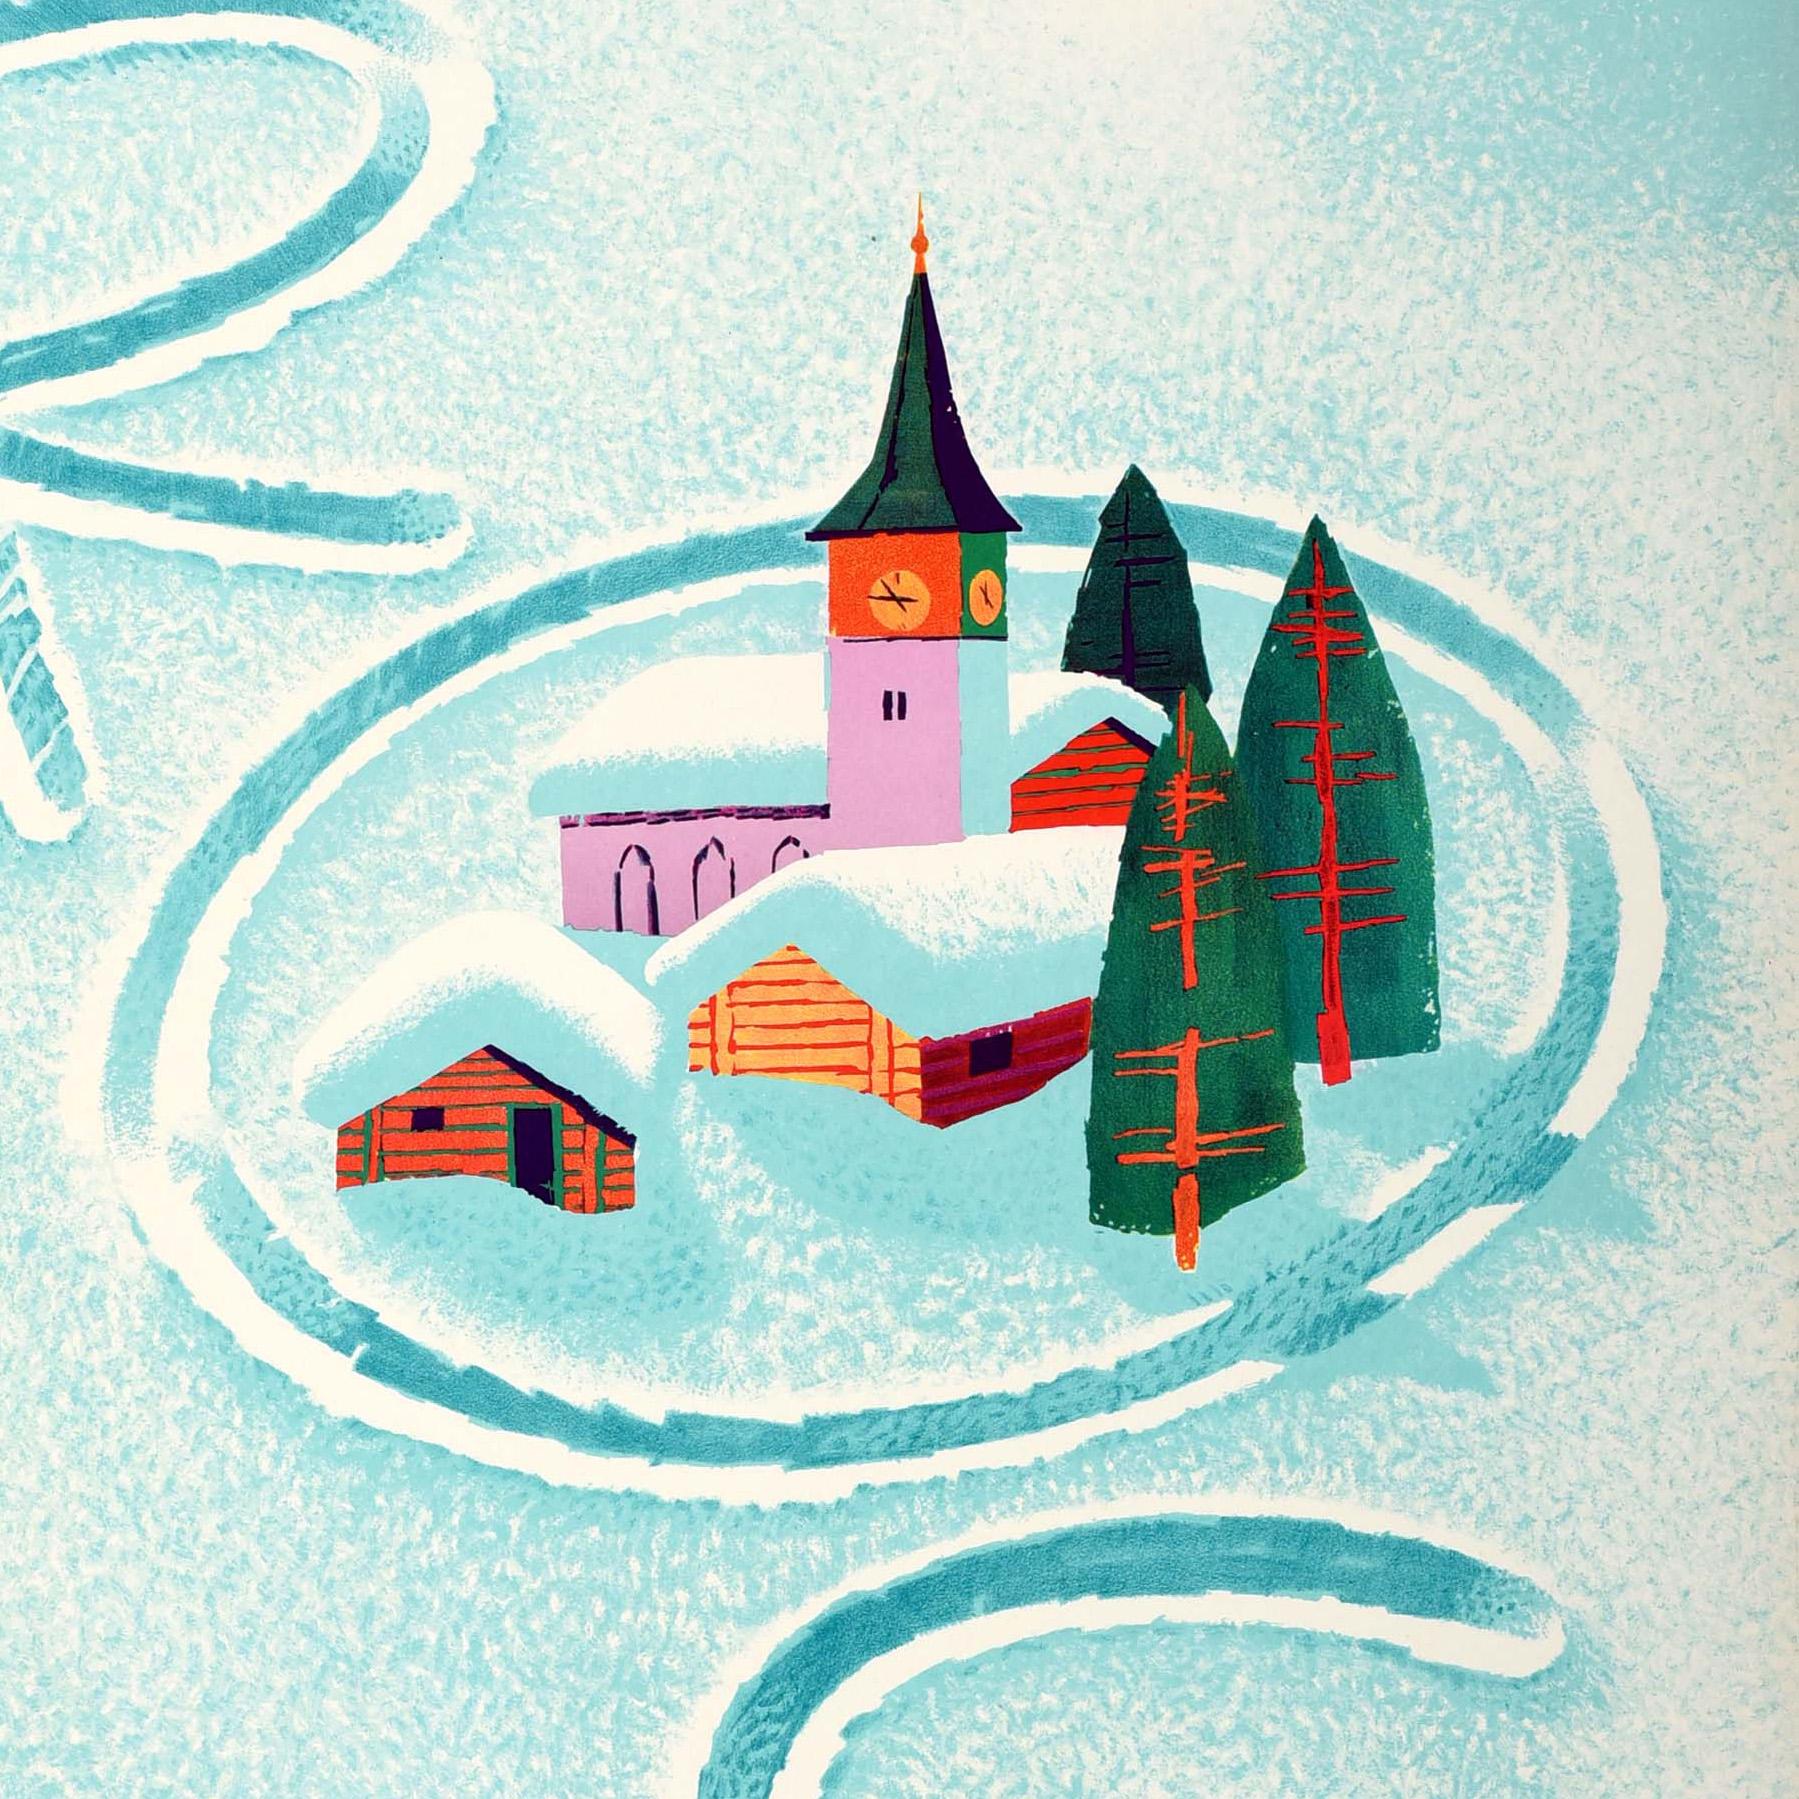 Affiche originale de voyage d'hiver pour Arosa Schweiz Suisse, avec un dessin amusant et coloré du célèbre artiste suisse Donald Brun (1909-1999) représentant une skieuse habillée à la mode, portant un foulard vert et un haut rouge, au bas d'une